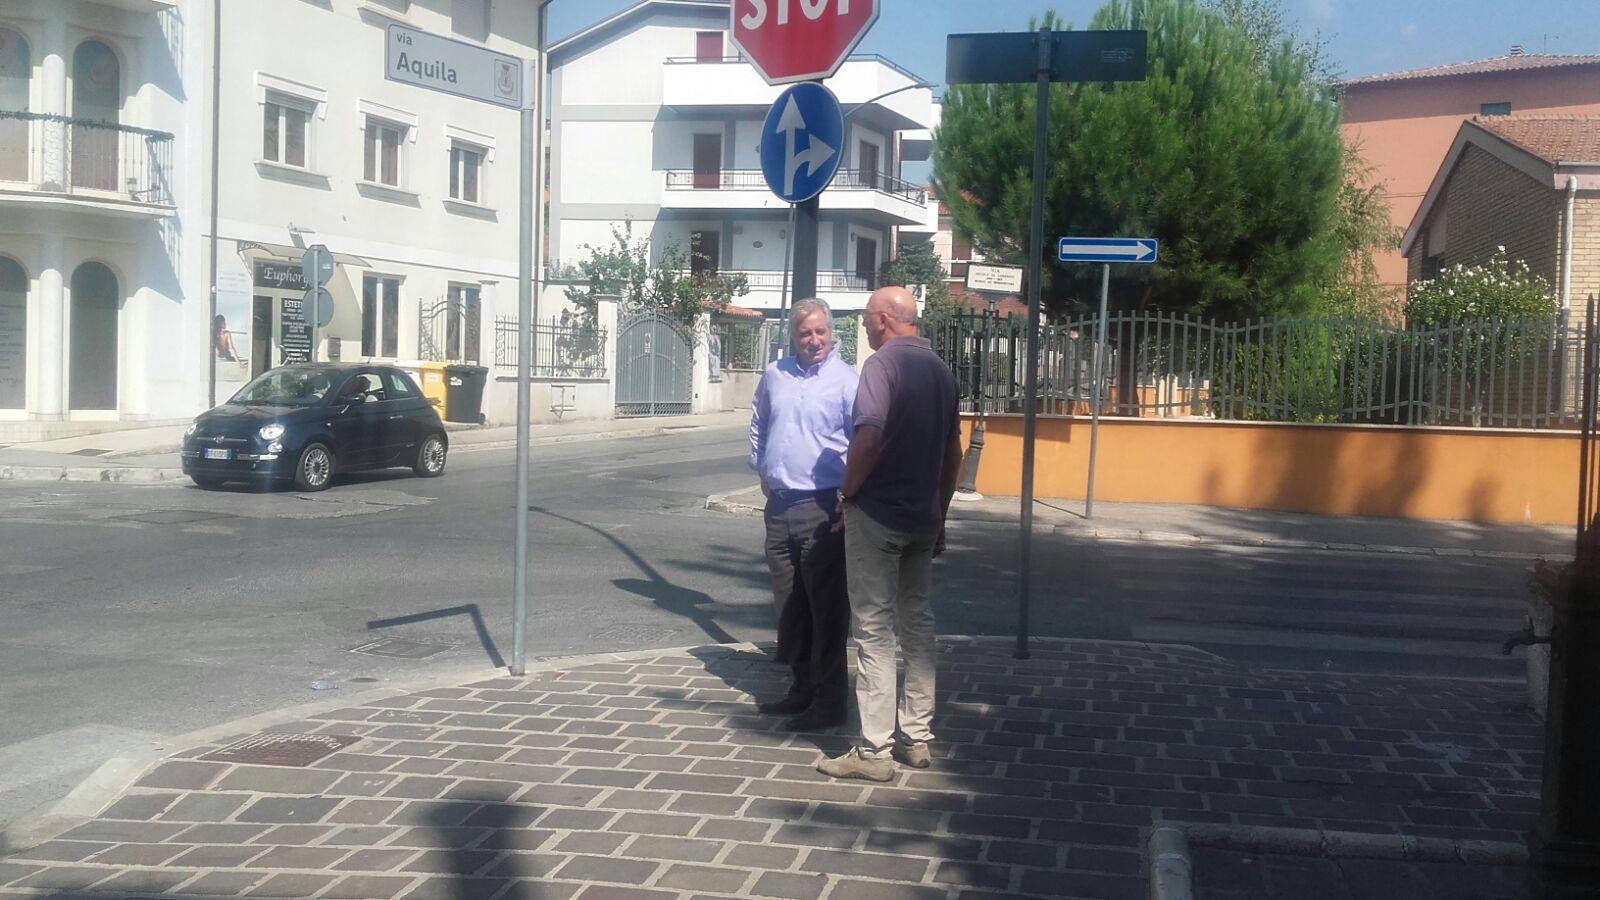 Sopralluogo del Comune all’incrocio tra via Aquila e via Nicola Di Lorenzo, in valutazione l’installazione di un semaforo